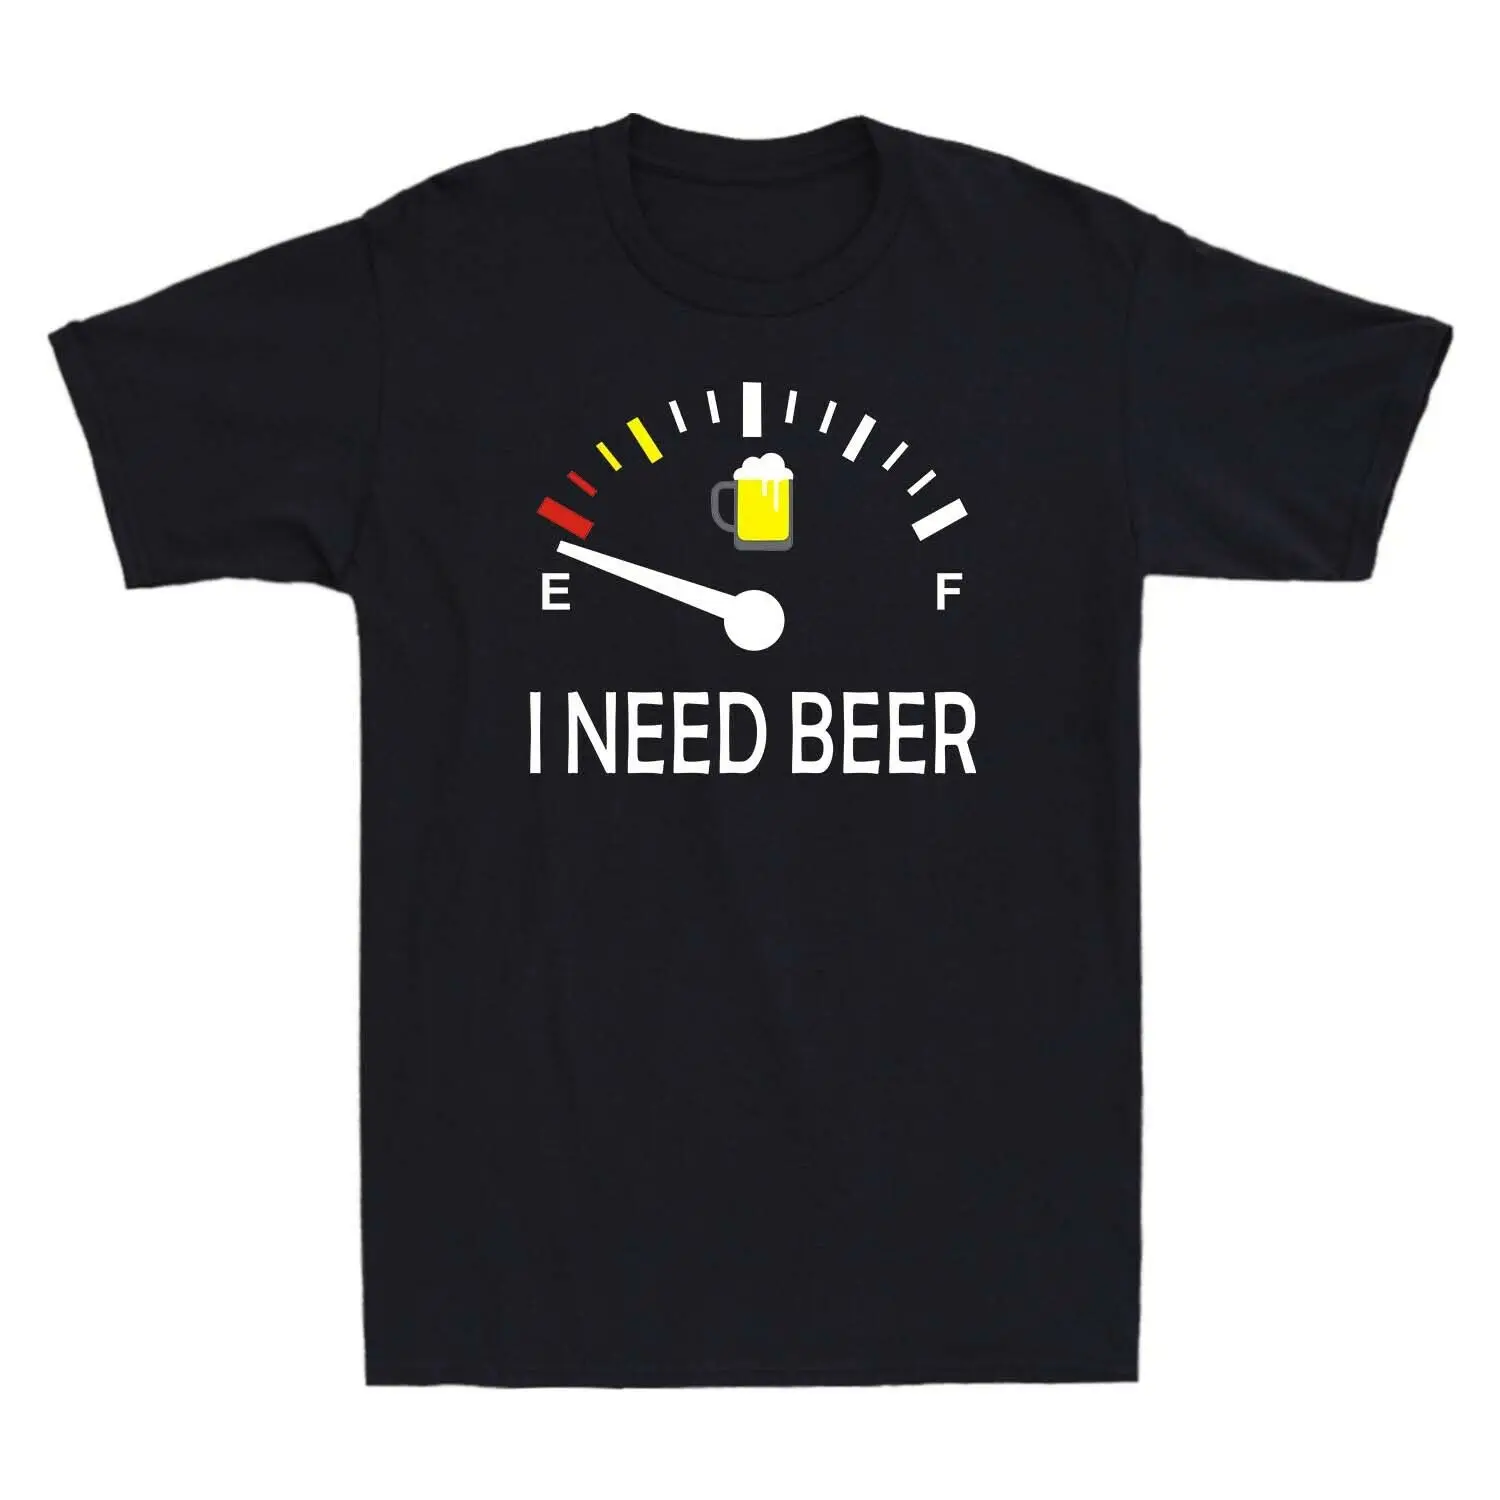 

Футболка Мужская/женская, забавная ретро-футболка с измерителем пива, креативный дизайн, графическая одежда